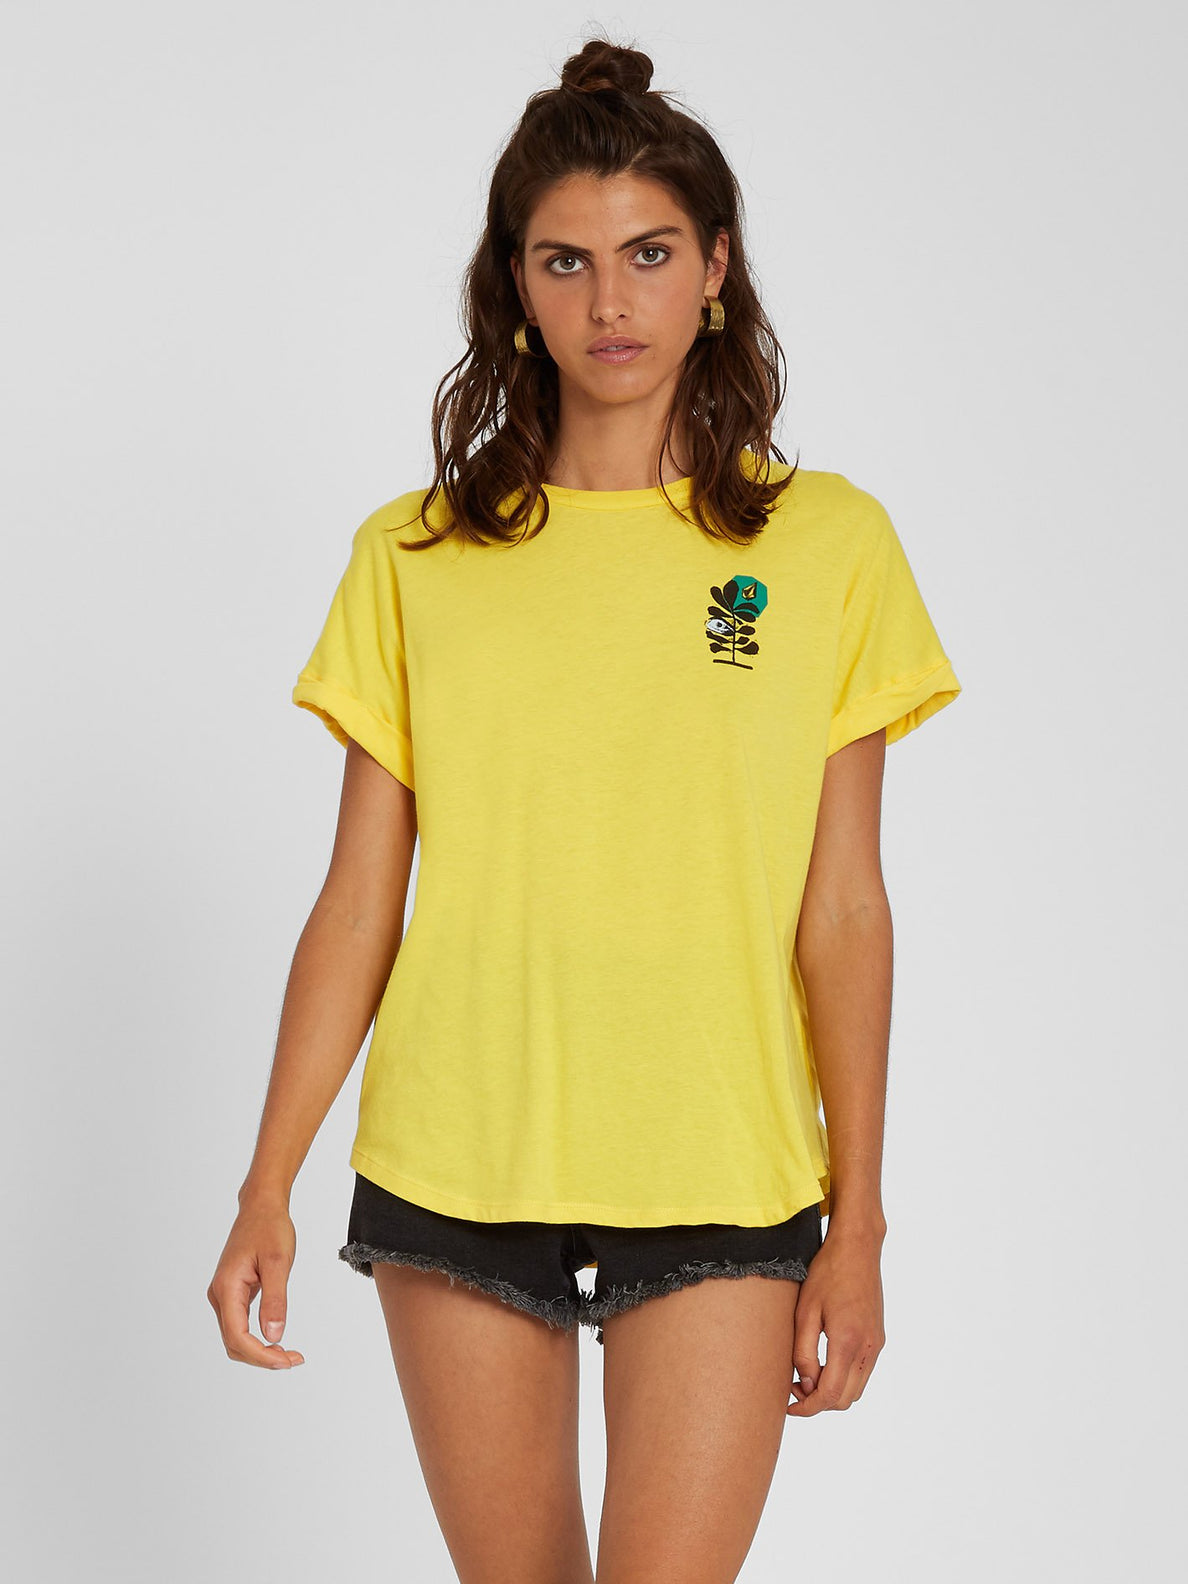 Frontye T-shirt - Acid Lemon (B3512118_ACL) [B]